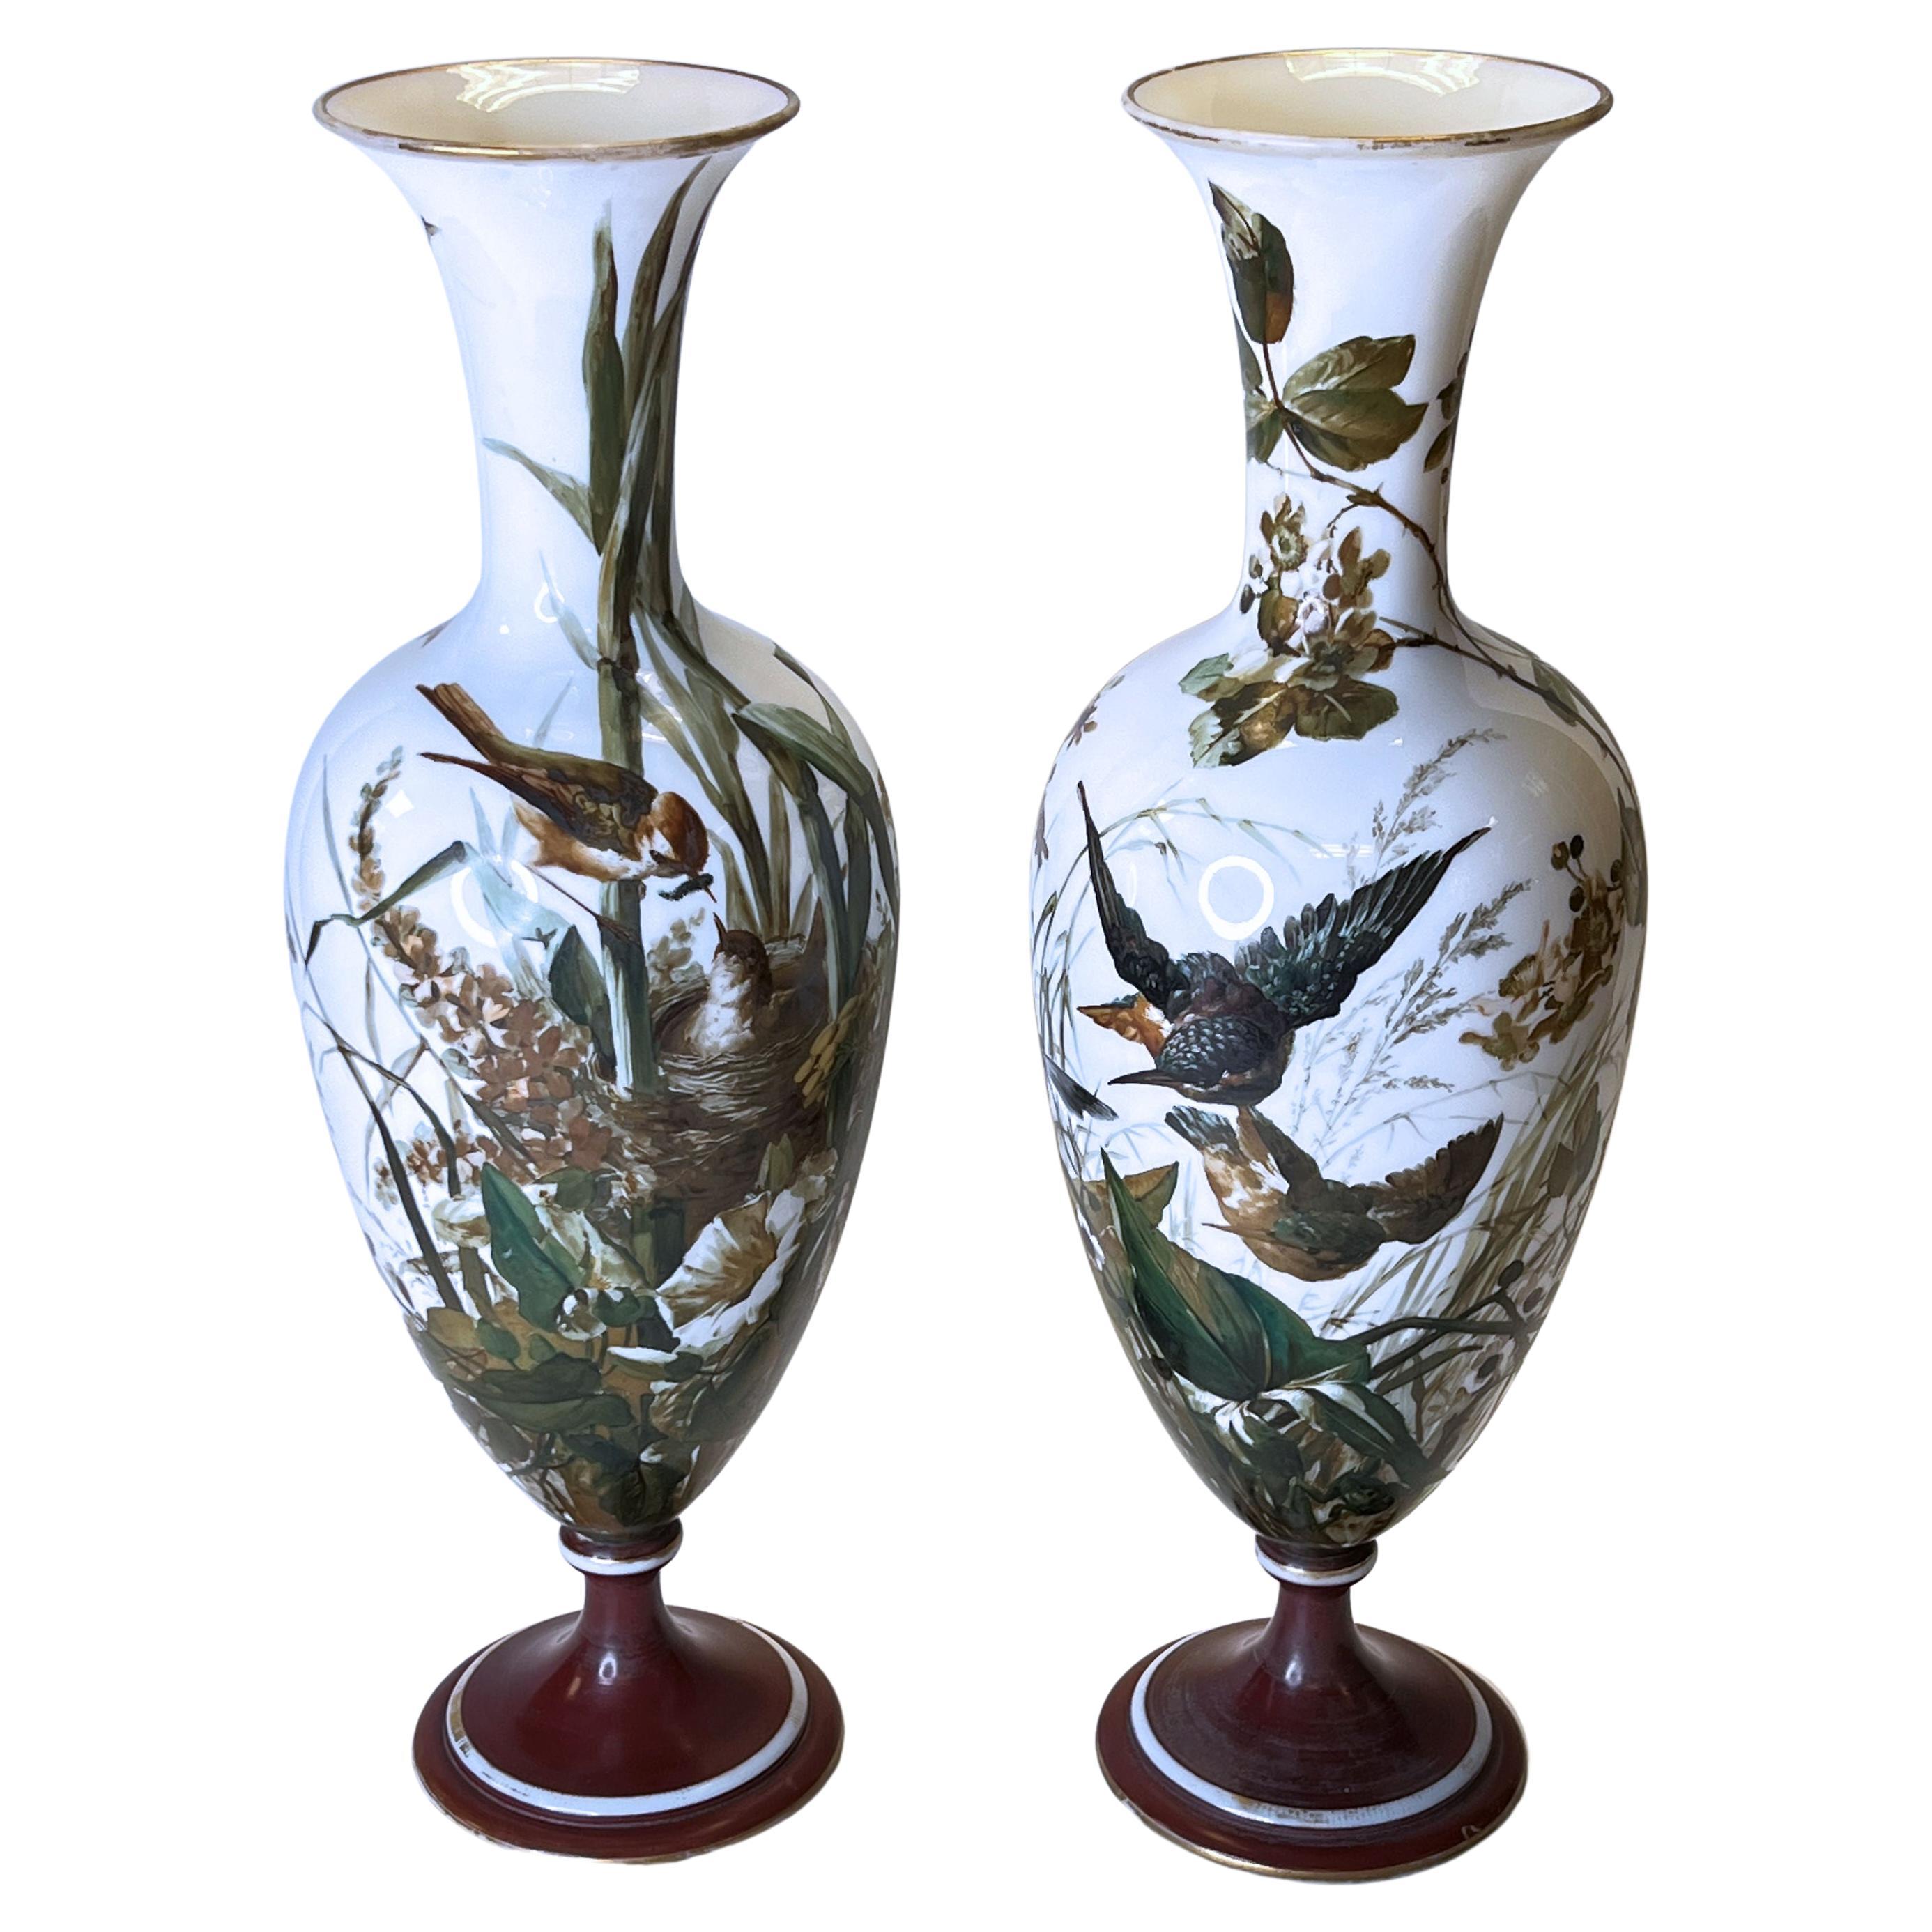 Paire de vases en verre opalin attribués à Baccarat avec oiseaux chanteurs peints